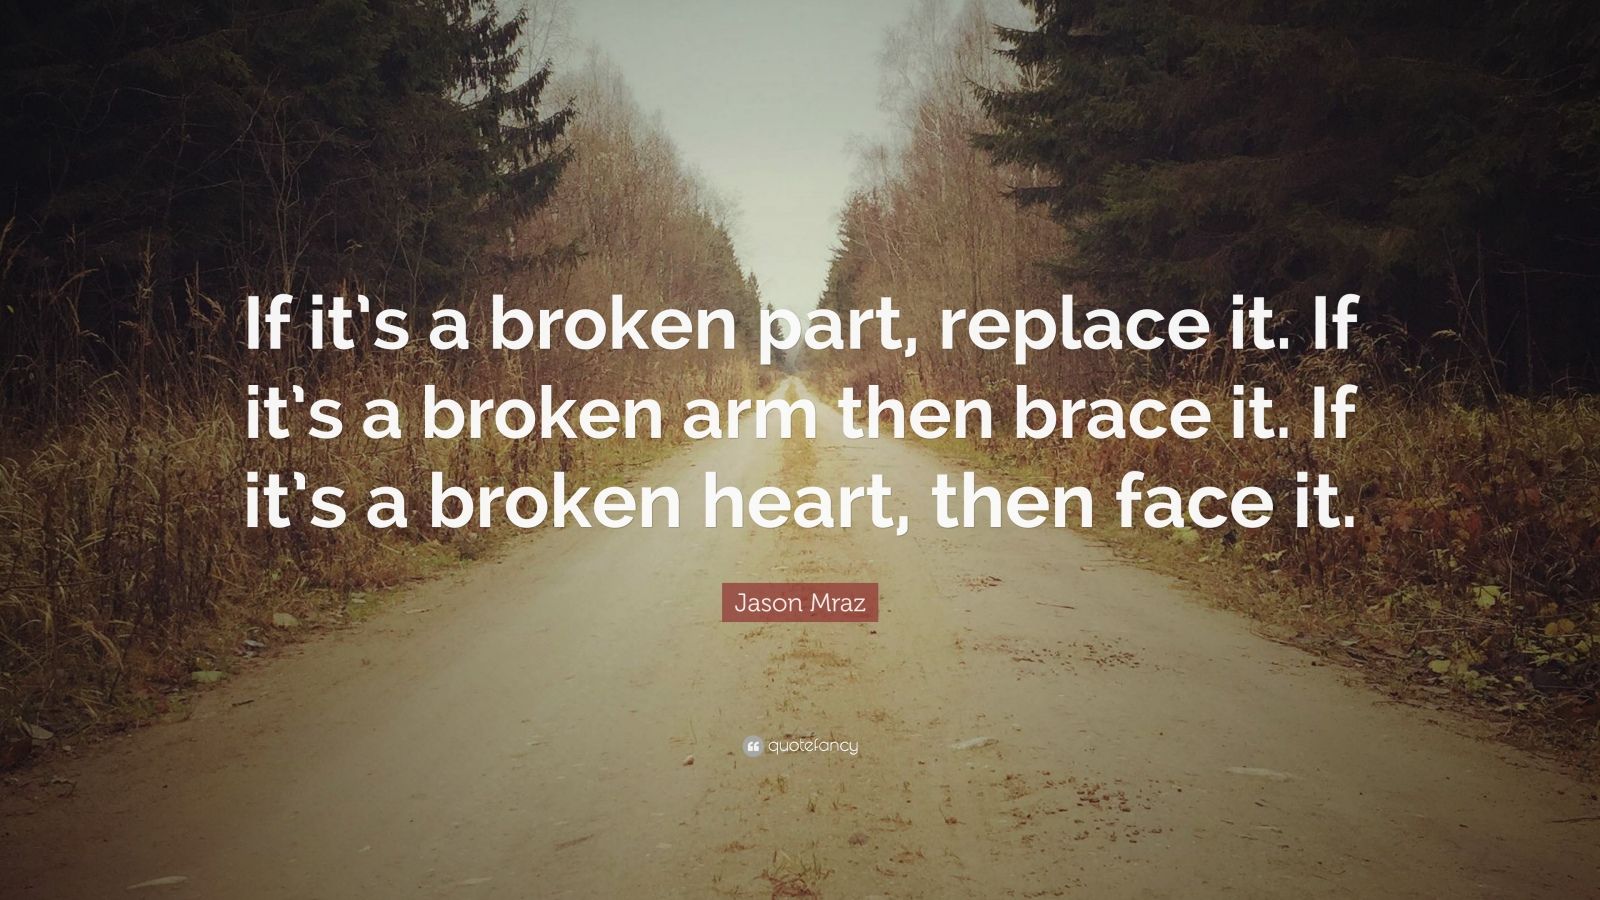 Heal My Broken Heart by Elle G. Mraz